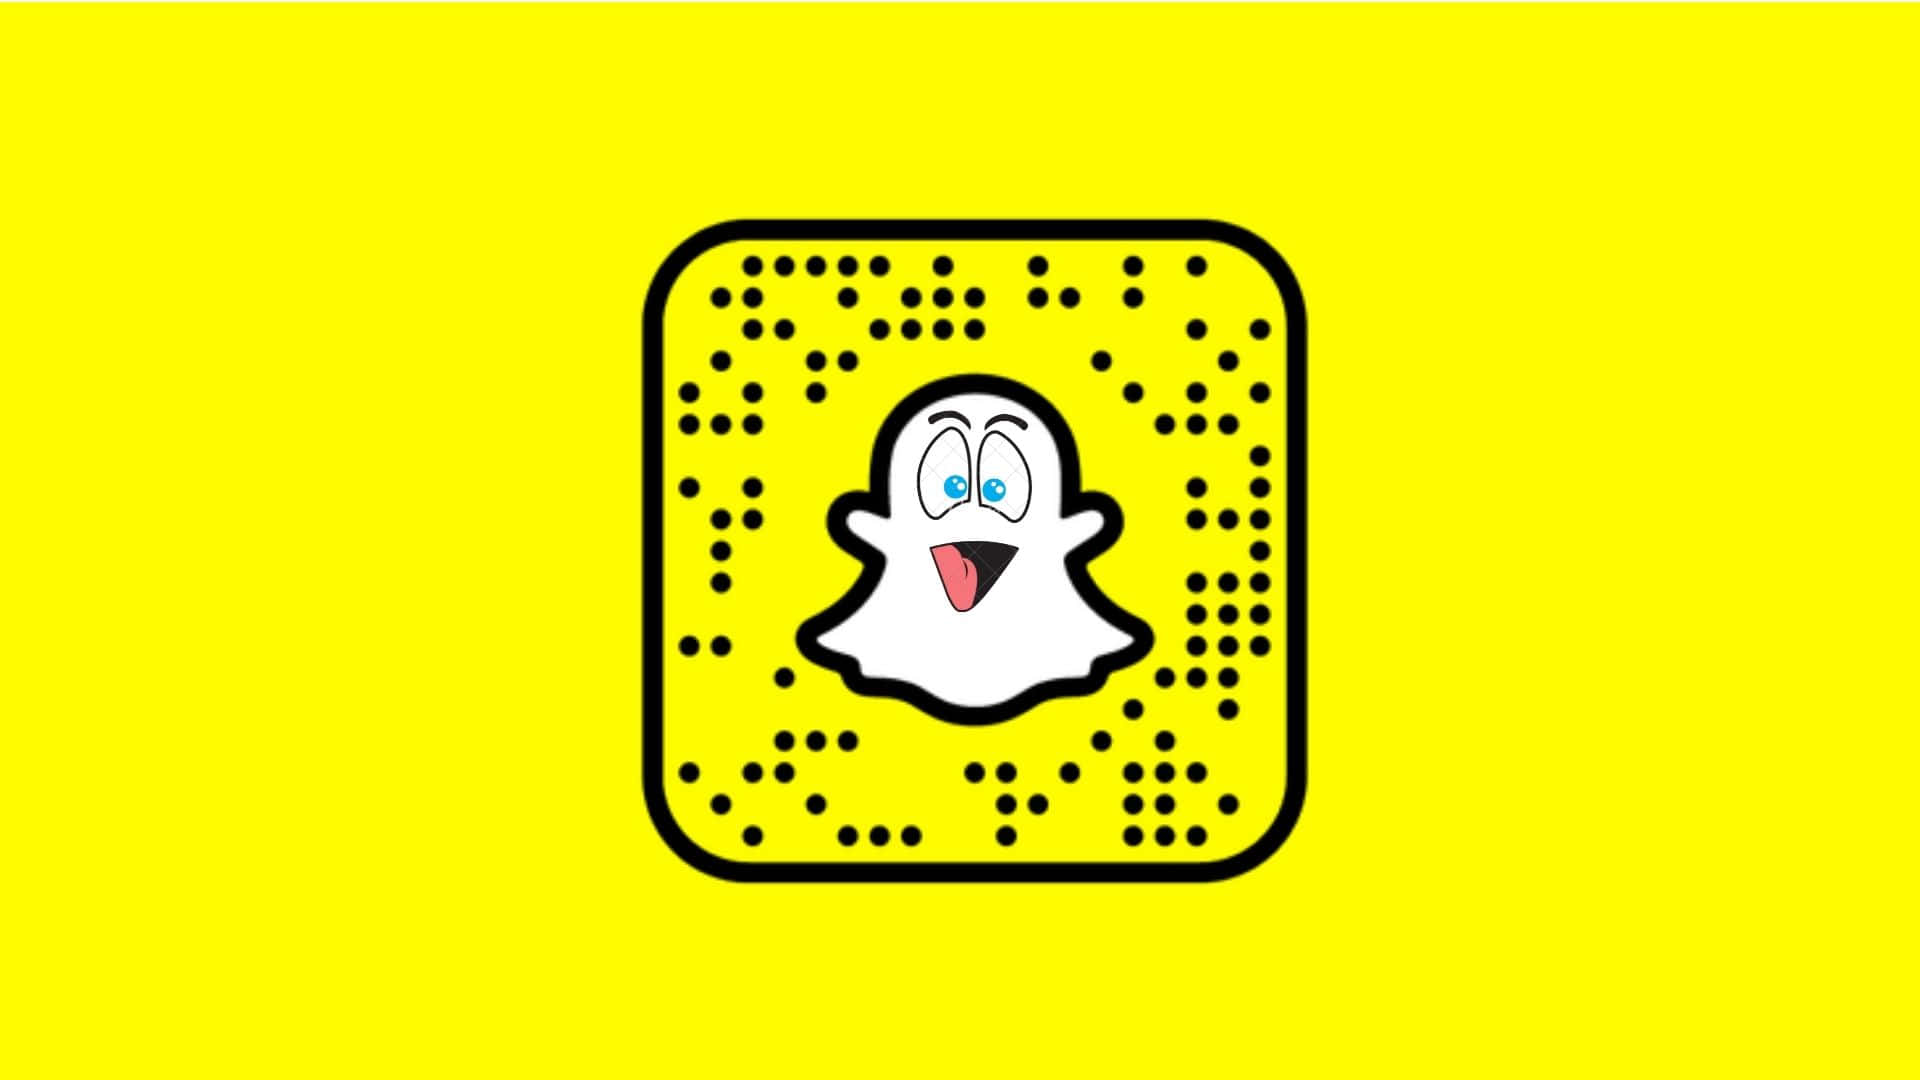 100+] Snapchat Backgrounds